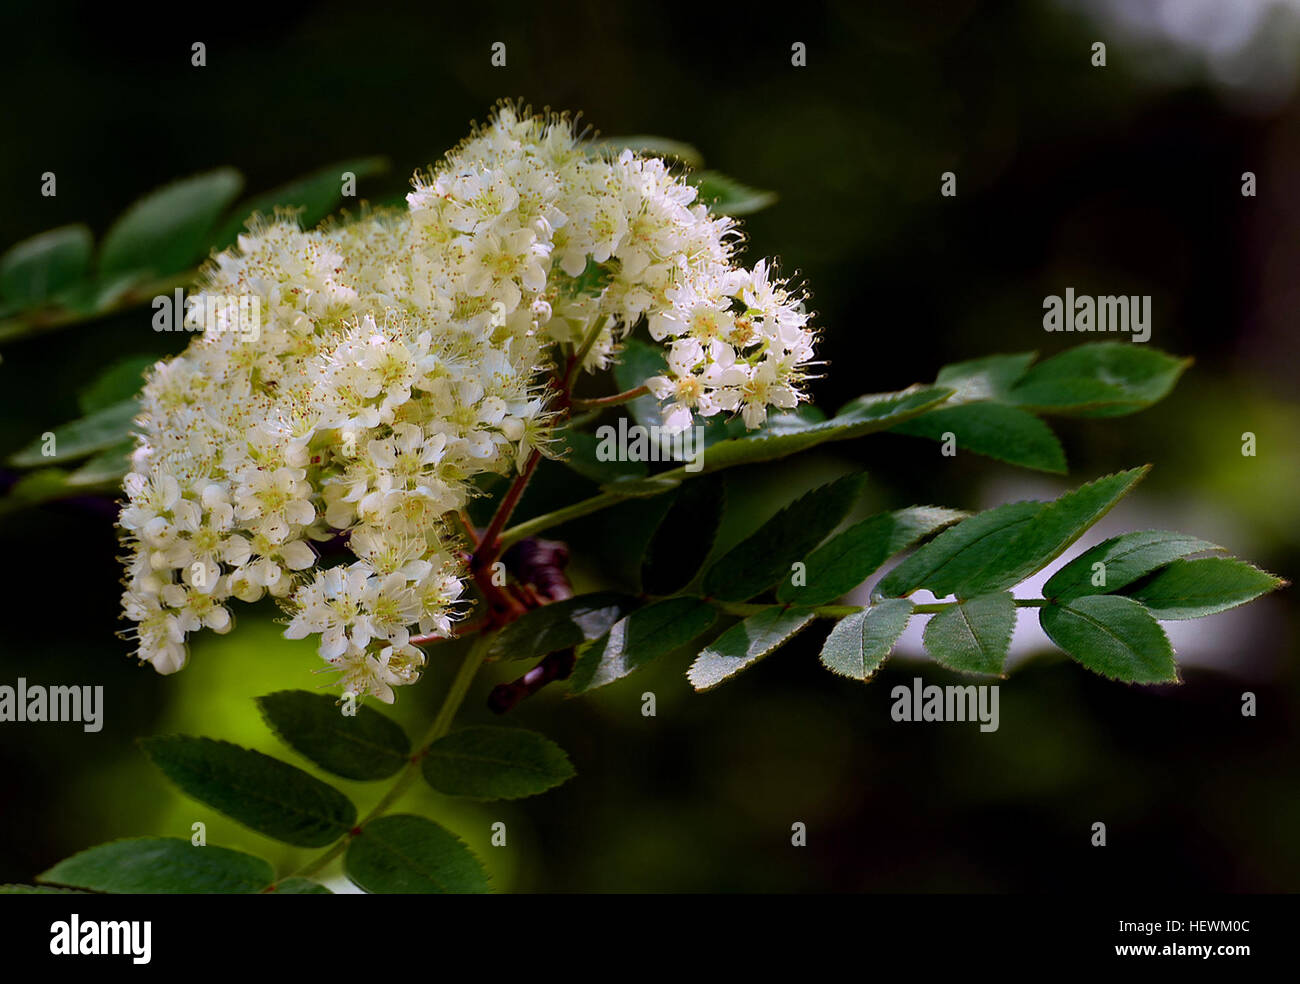 Le rowans ou mountain-cendres sont des arbustes ou des arbres en genre Sorbus de famille des Rosaceae. Ils sont des régions tempérées Régions de l'hémisphère Nord, avec la plus grande diversité d'espèces dans les montagnes de l'ouest de la Chine et de l'Himalaya, où se produisent de nombreux micro-espèces apomictiques. Le nom rowan était à l'origine appliqué à l'espèce Sorbus aucuparia, et est également utilisé pour d'autres espèces dans le sous-genre Sorbus Sorbus. Rowans sont sans rapport avec la véritable frêne, qui appartiennent au genre Fraxinus, oléacées, si leur similarité superficielle laisse porter. Banque D'Images